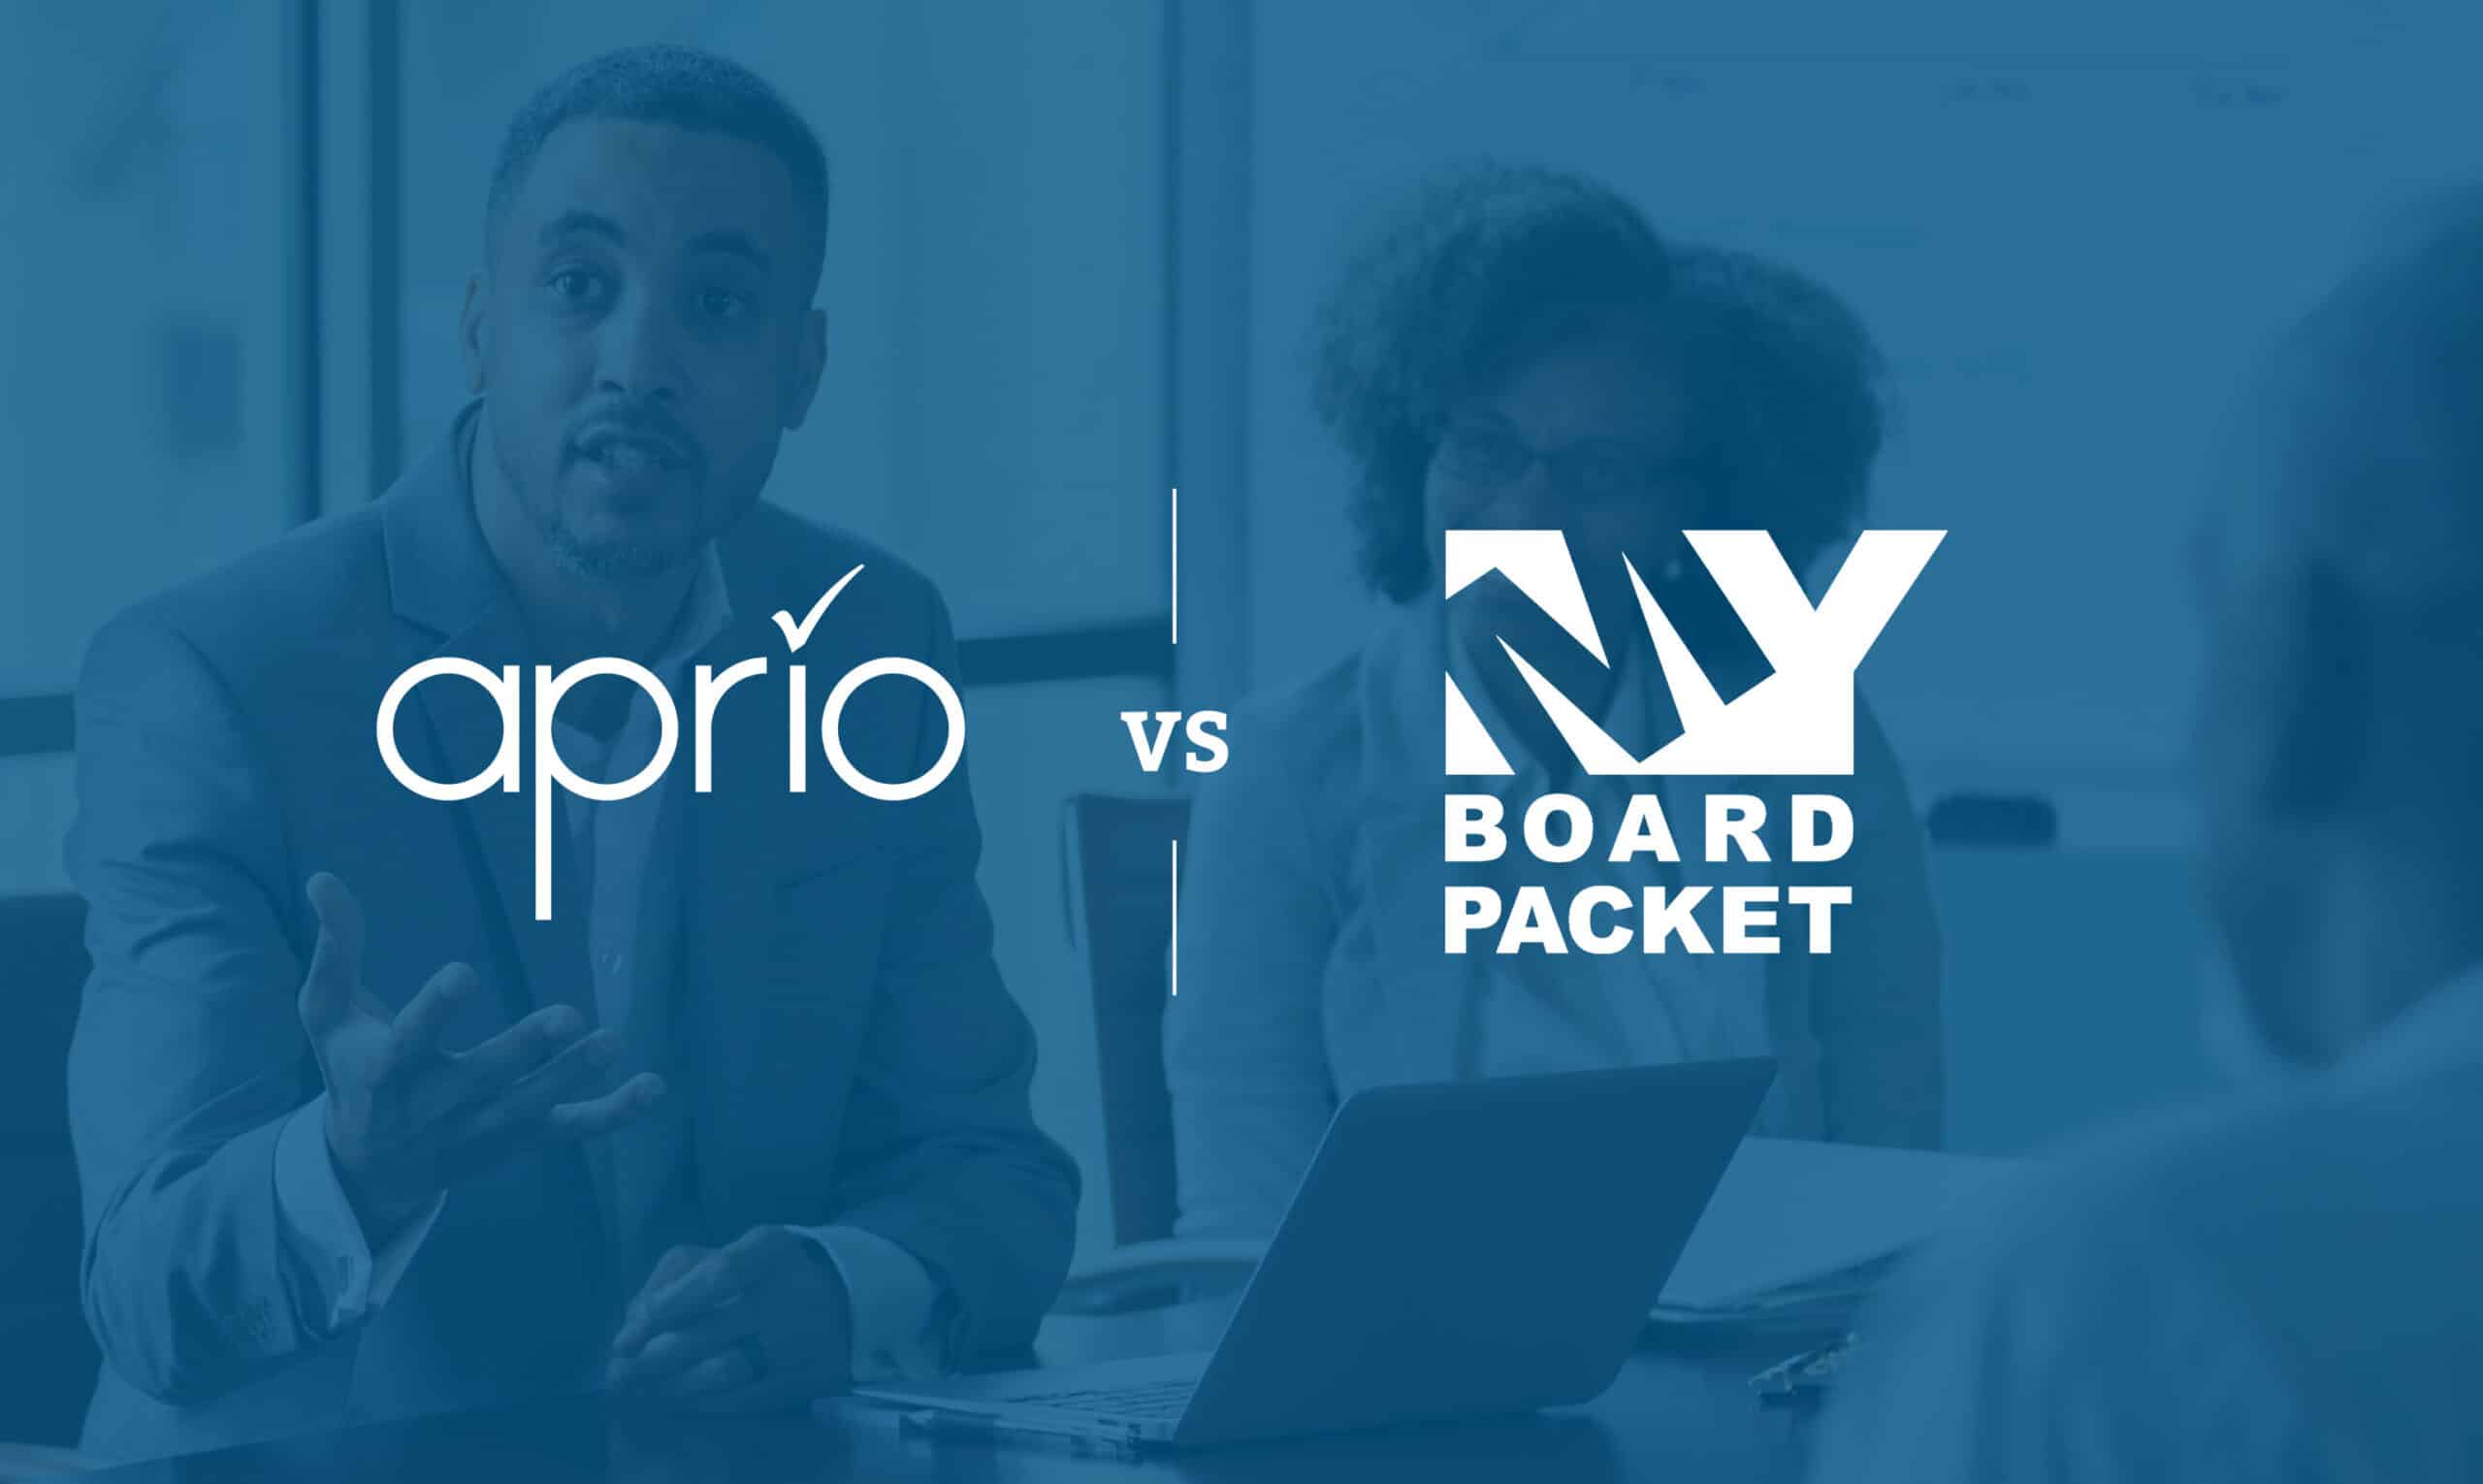 board portal comparison - Aprio vs. MyBoardPacket